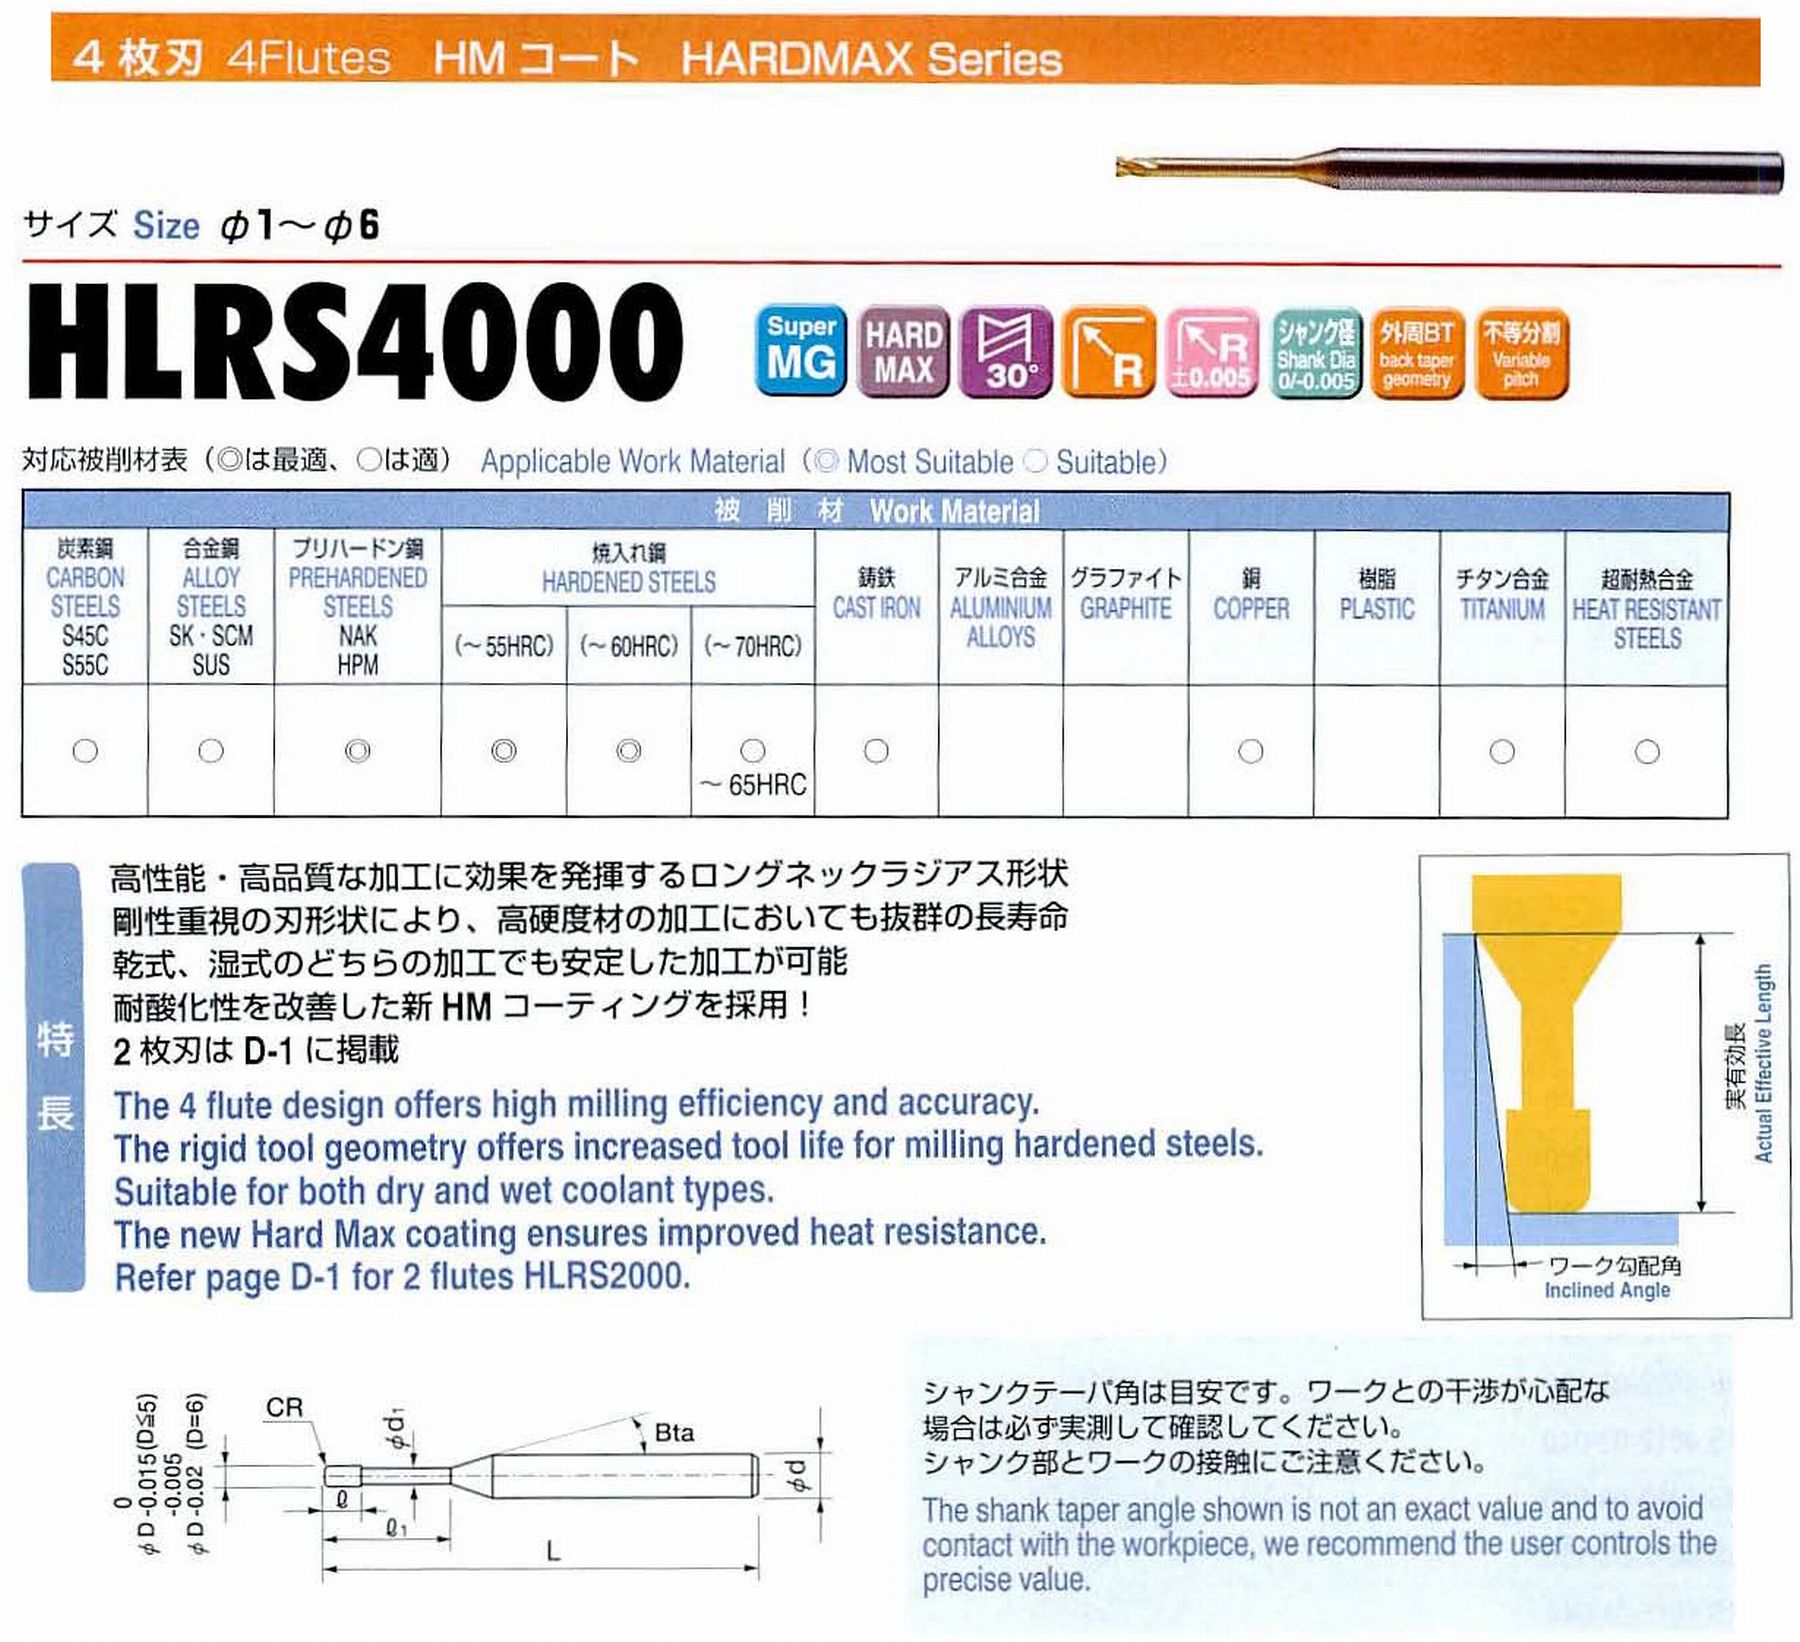 ユニオンツール 4枚刃 HLRS4030-005-040 外径3 コーナ半径R0.05 有効長4 刃長2.4 首径2.92 シャンクテーパ角16° 全長55 シャンク径6